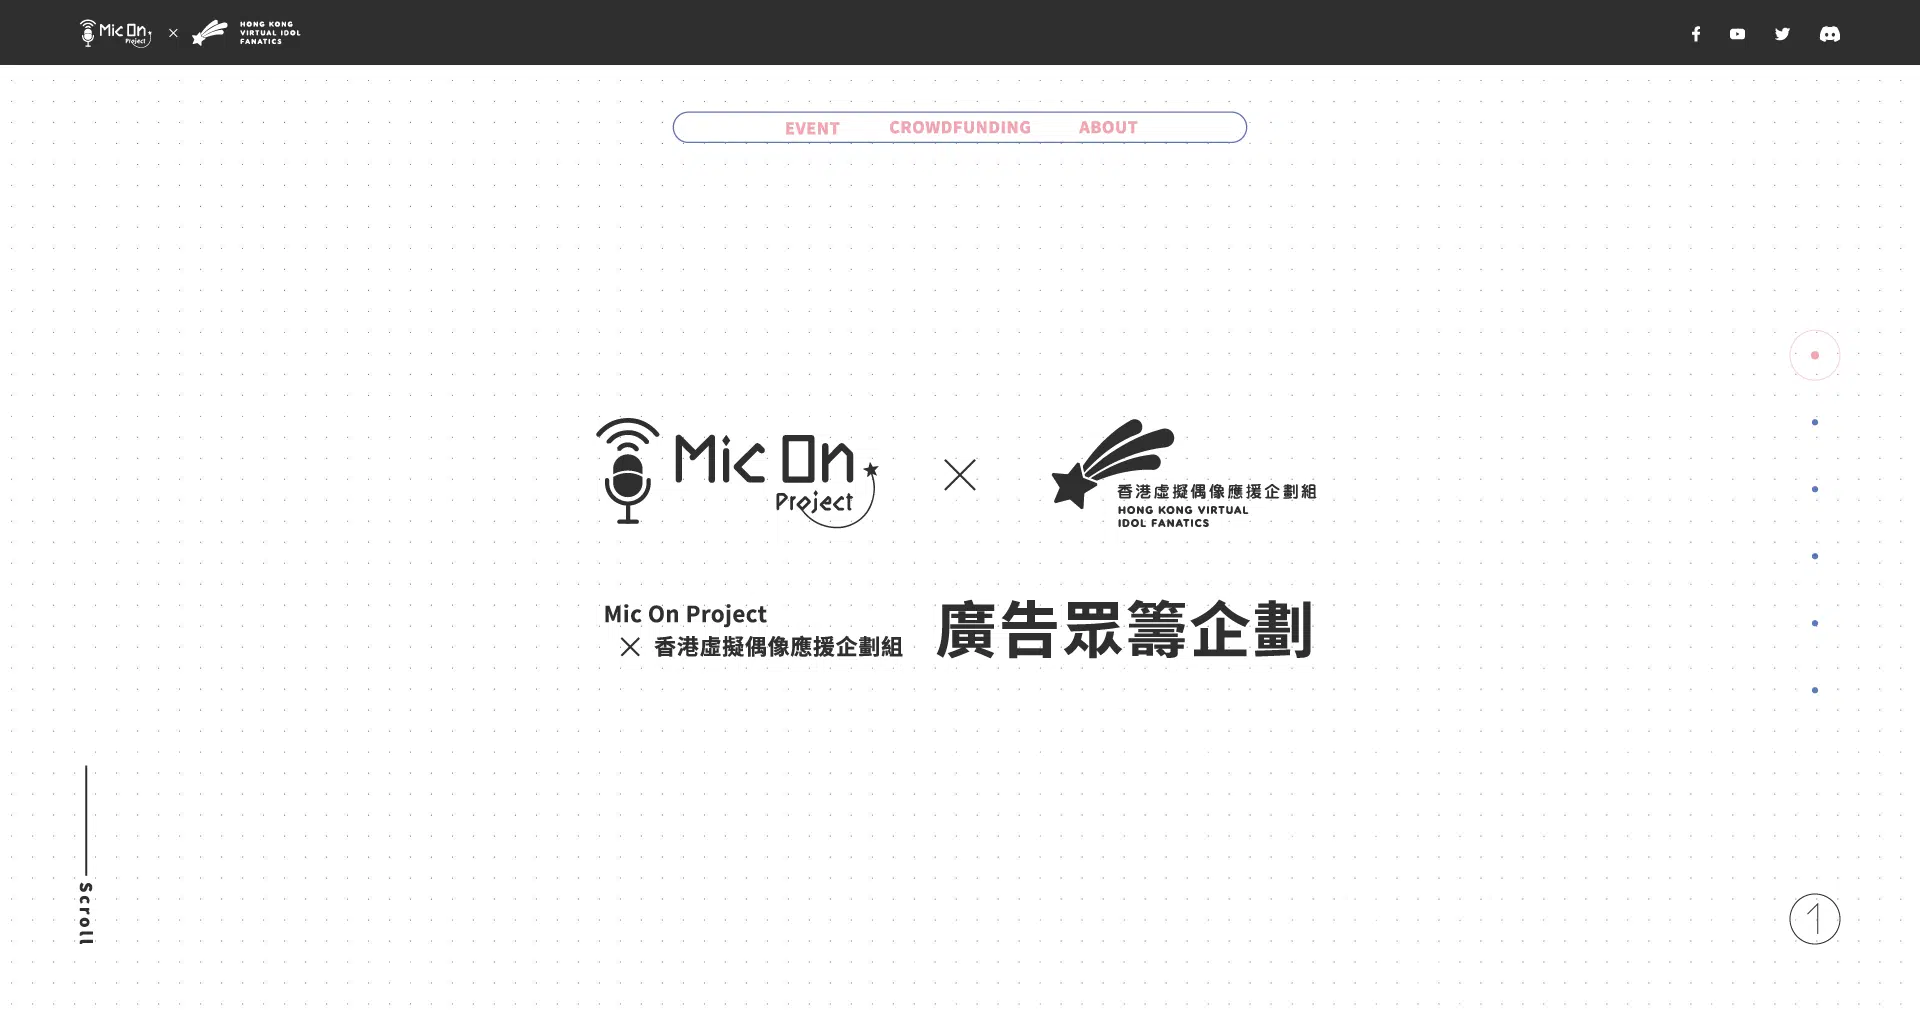 Mic-On-x-HKVIF-廣告眾籌企劃-Web-Ui-v3.7-OP_Landing-page